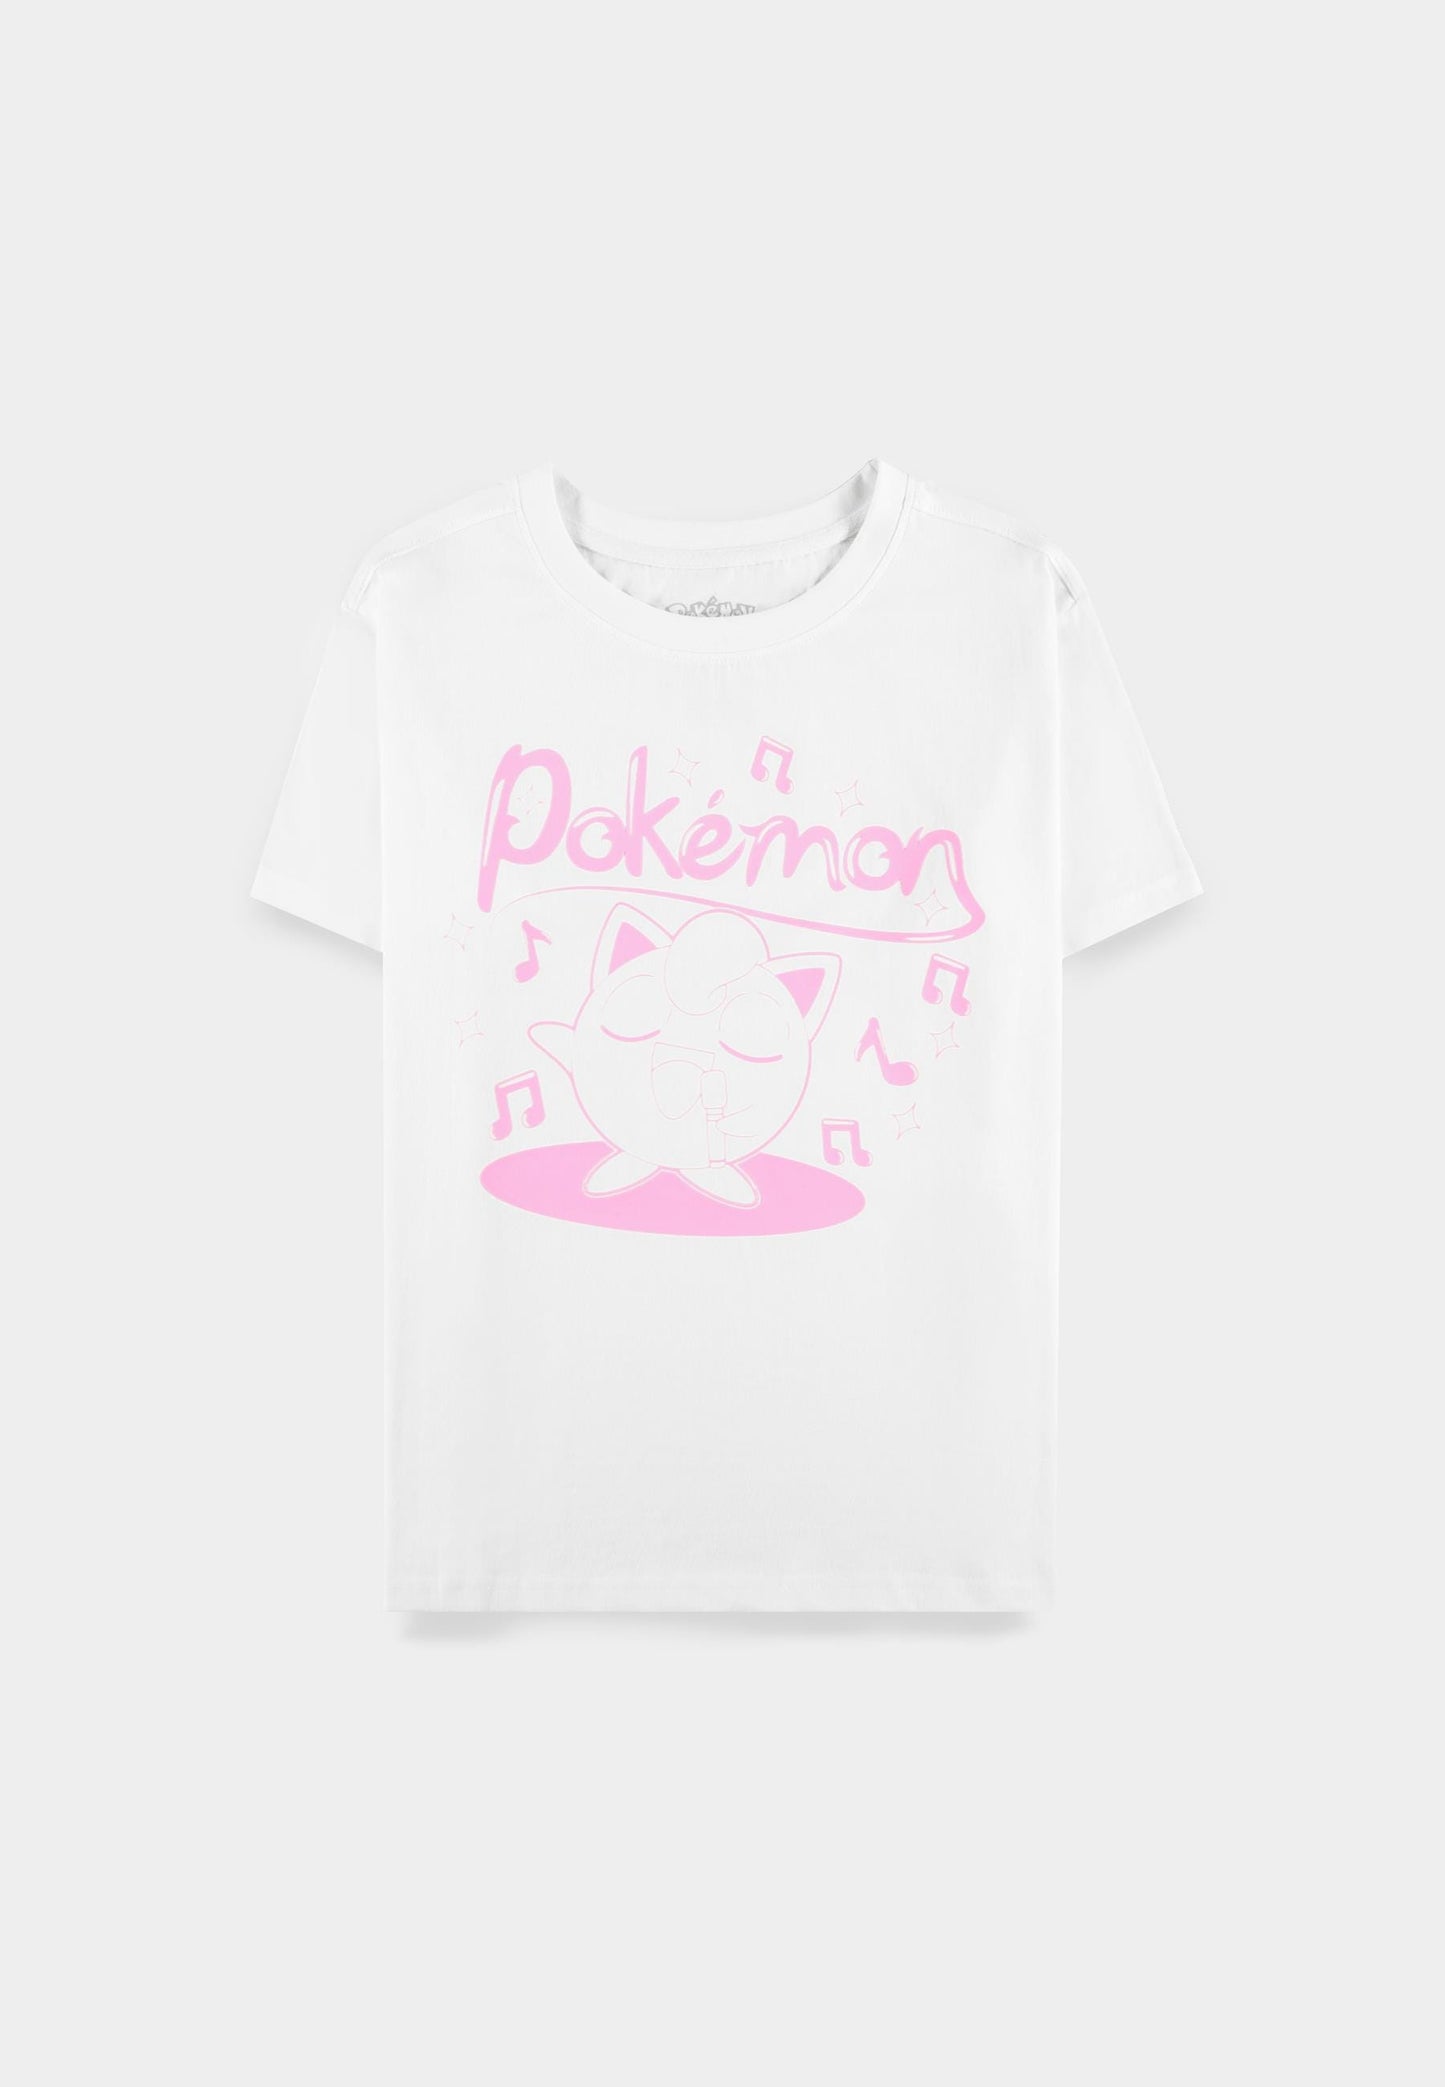 Pokémon - Jigglypuff Sing - Women's Short Sleeved T-shirt